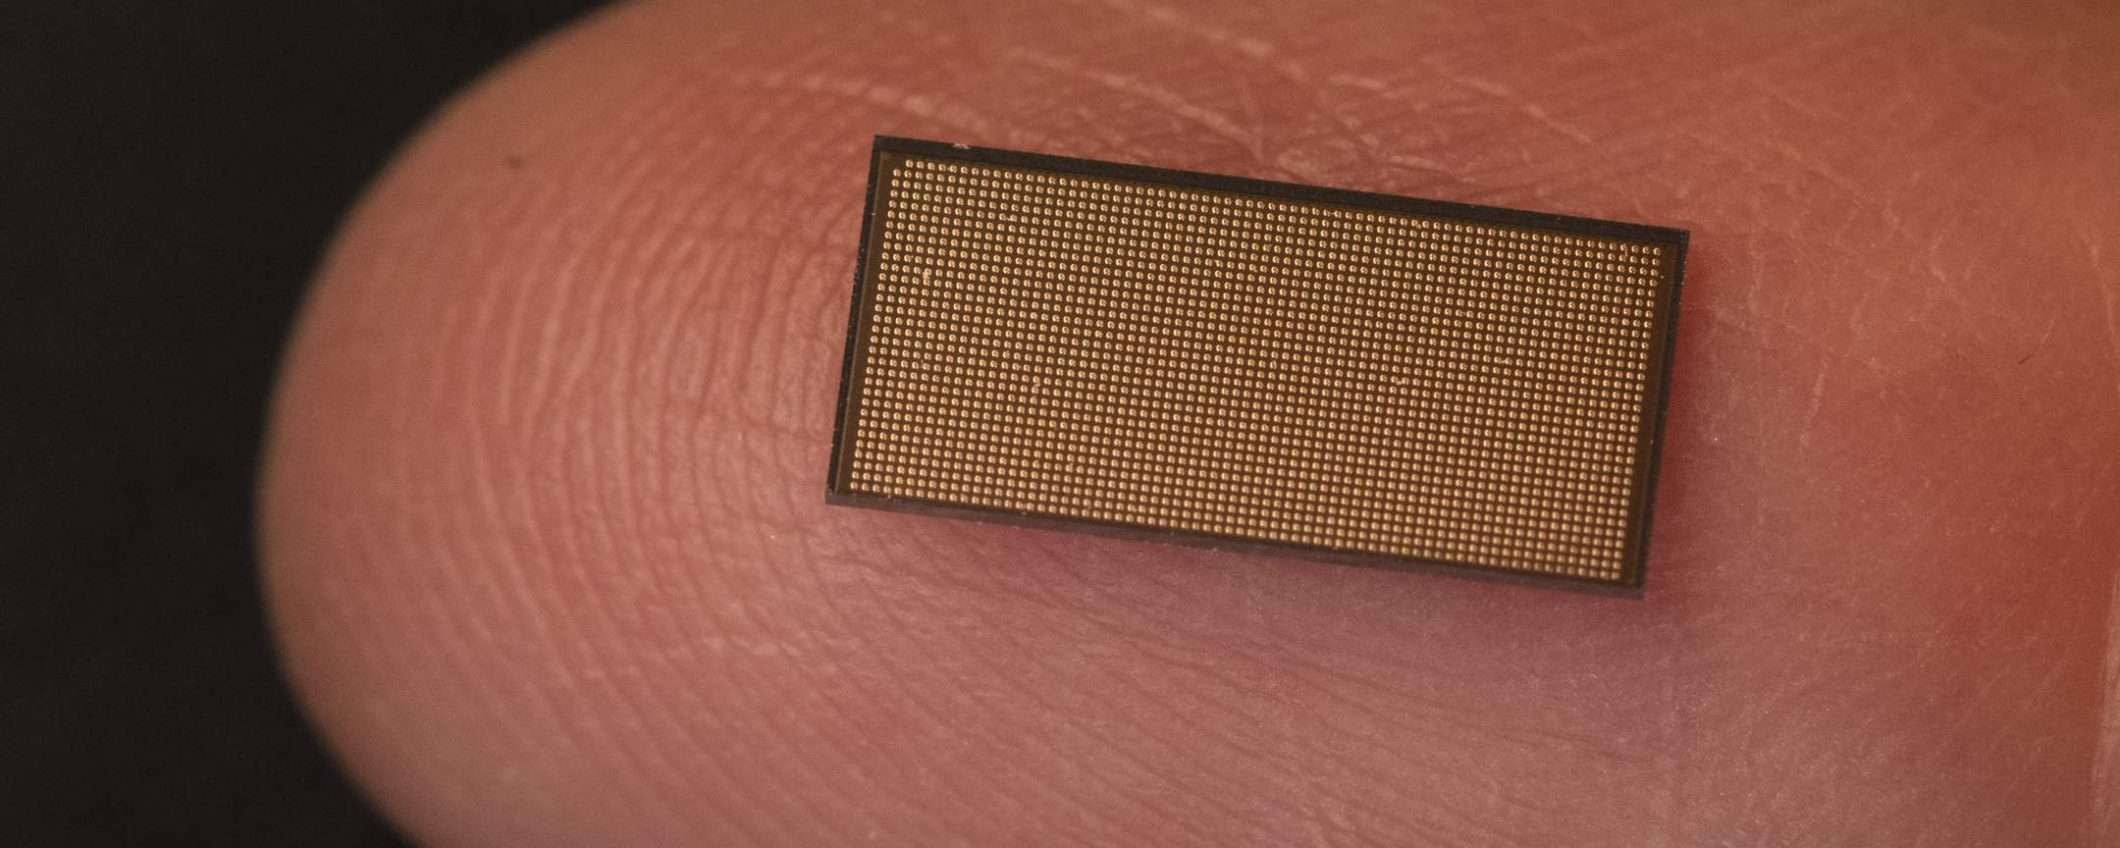 Intel Loihi 2: nuovo chip neuromorfico